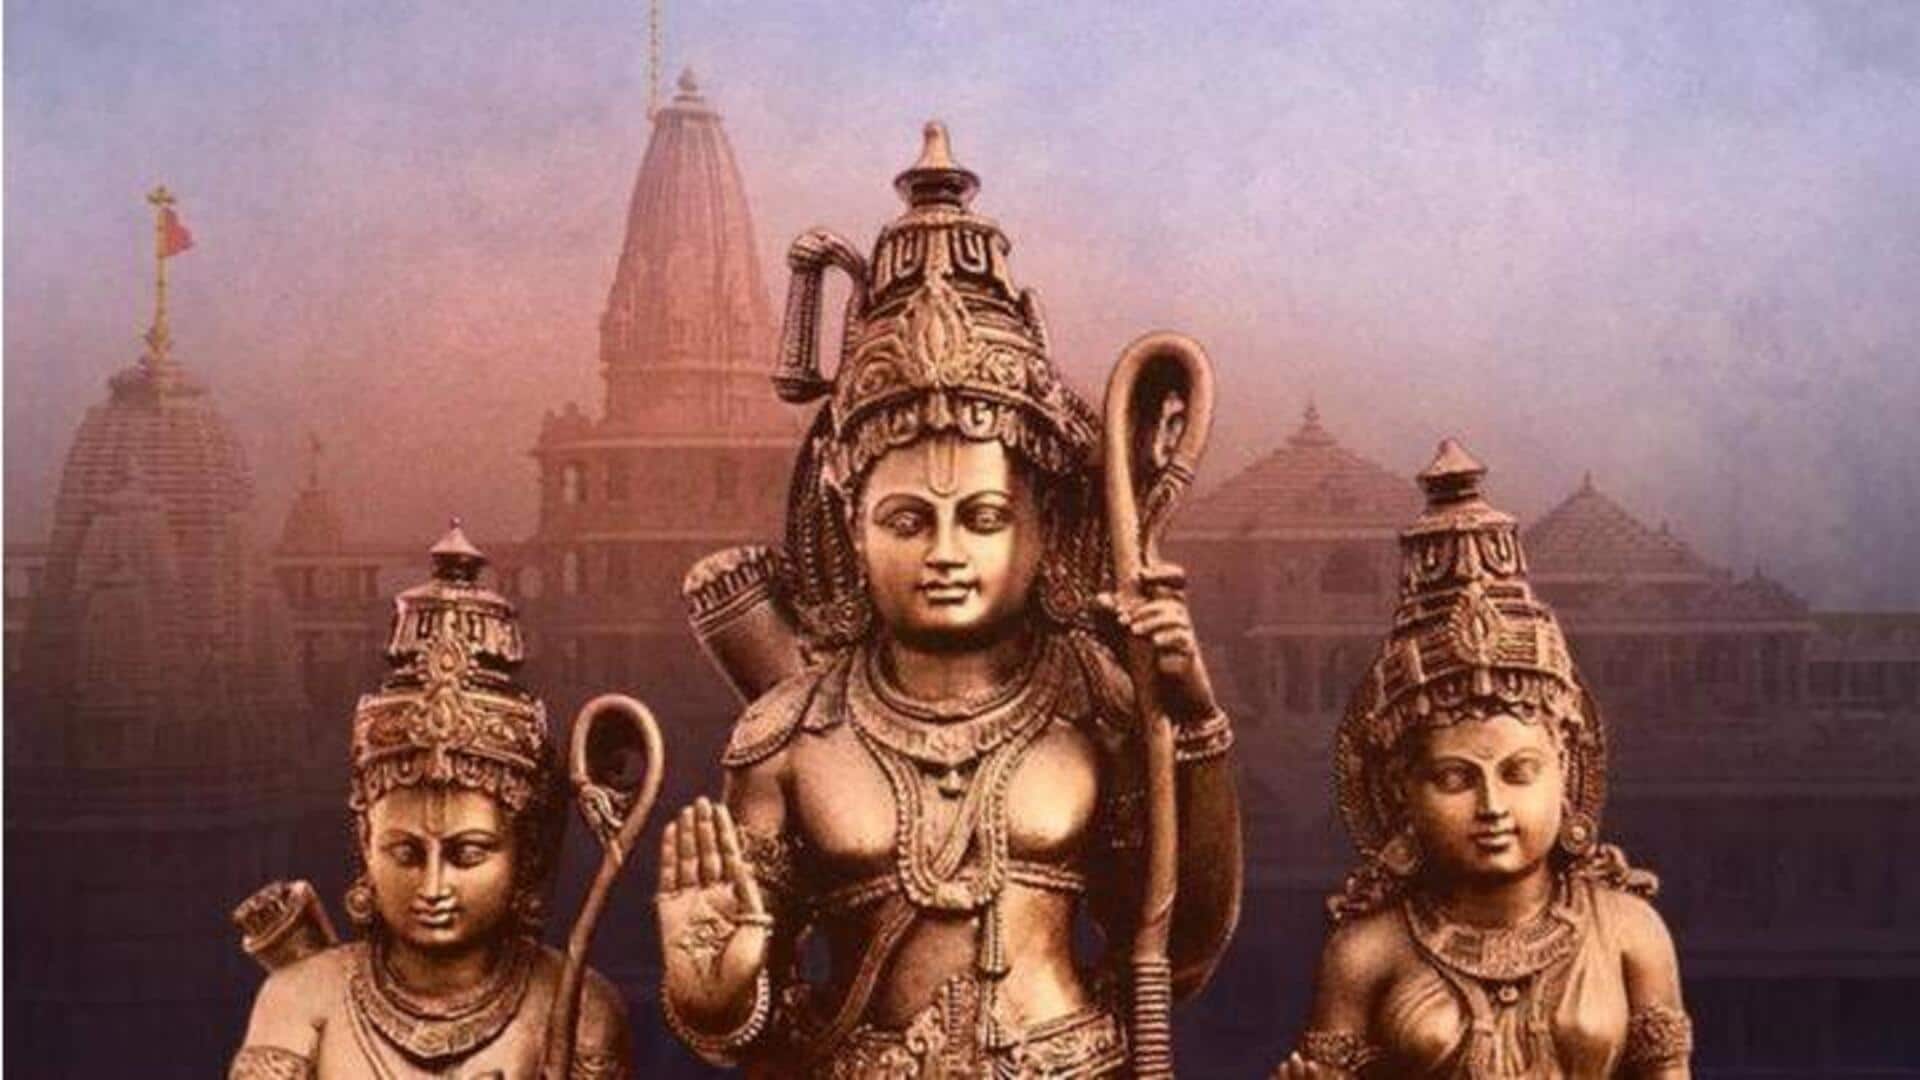 Sri Ram puja: అయోధ్య రామాలయం ప్రారంభోత్స వేళ.. మీ ఇంట్లోనే శ్రీరాముడిని ఈ విధానంలో పూజించండి